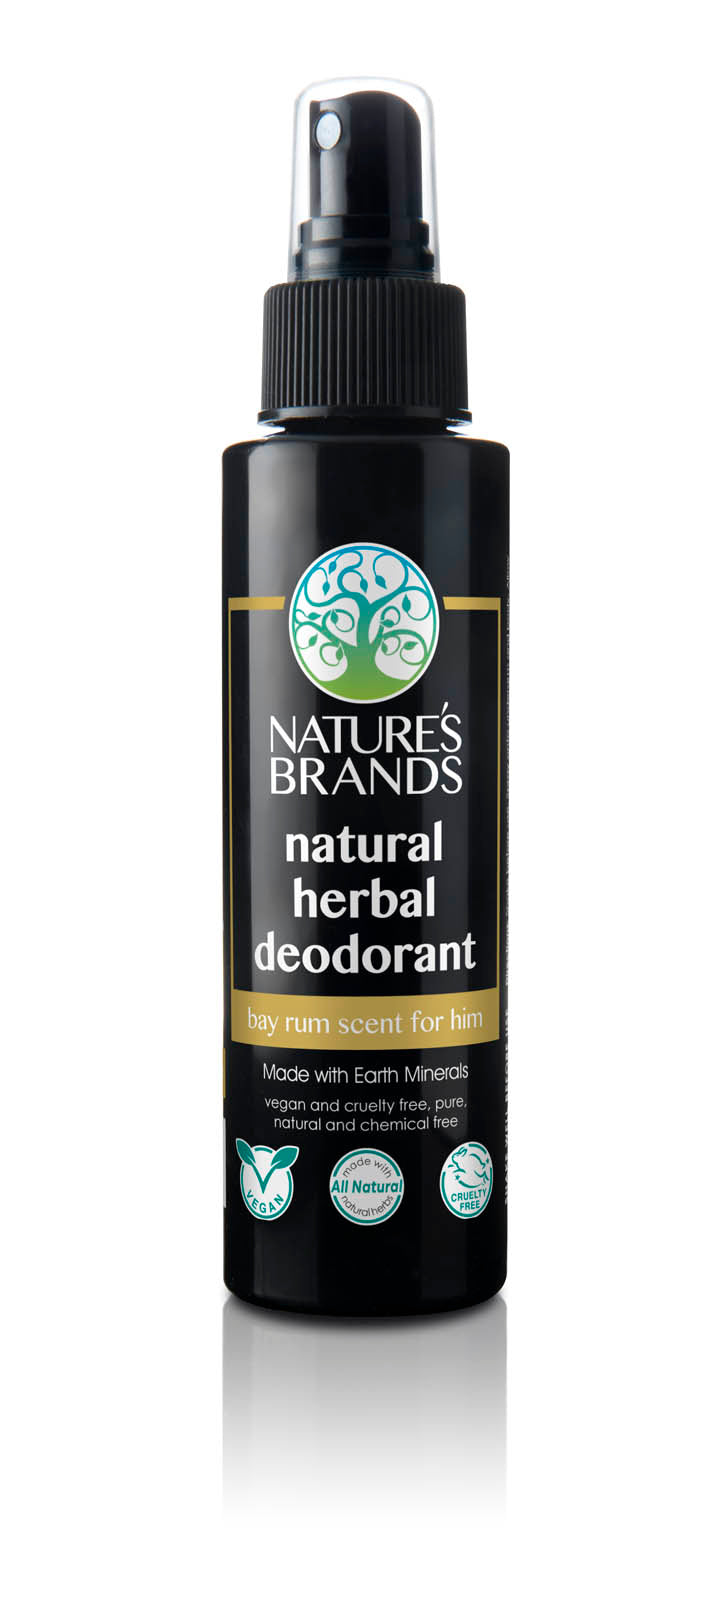 Herbal Choice Mari Natural Deodorant - Herbal Choice Mari Natural Deodorant - Herbal Choice Mari Natural Deodorant